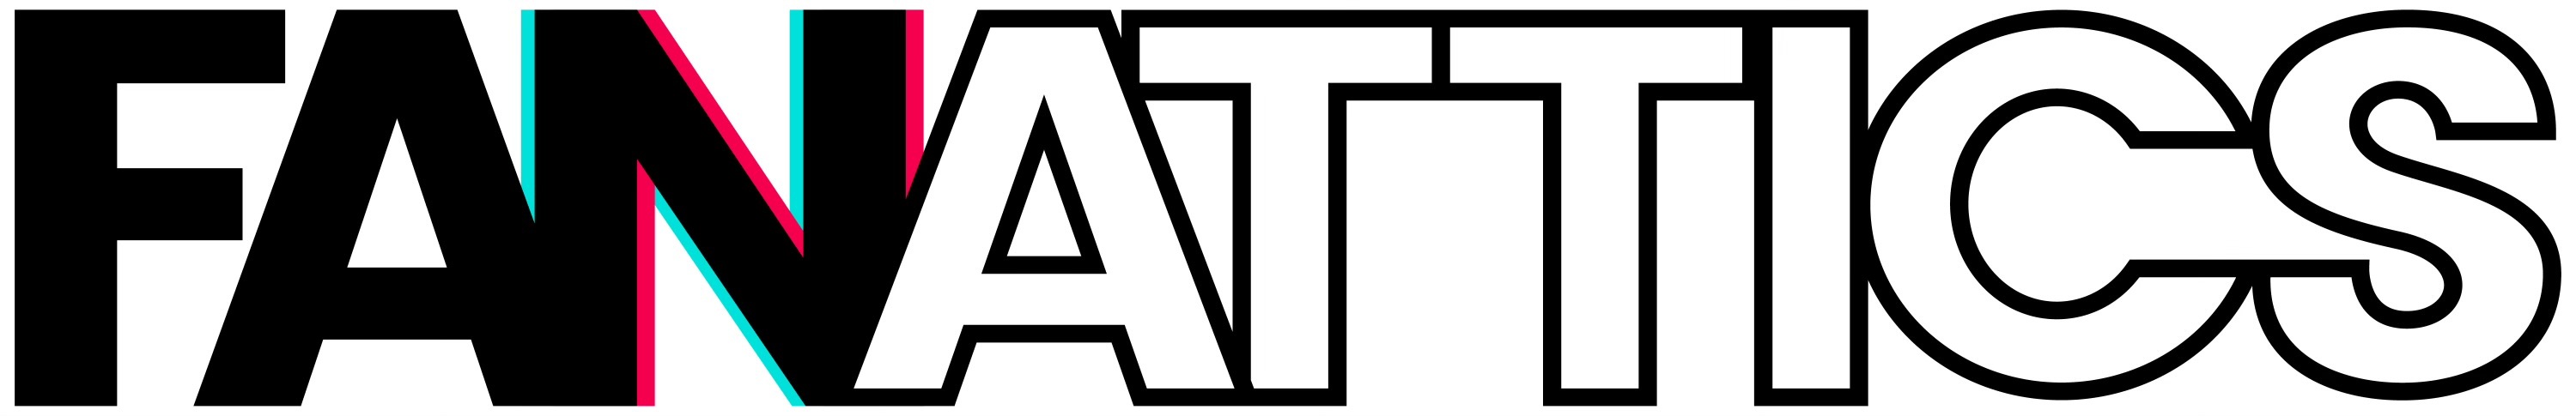 FANATTICS's logo